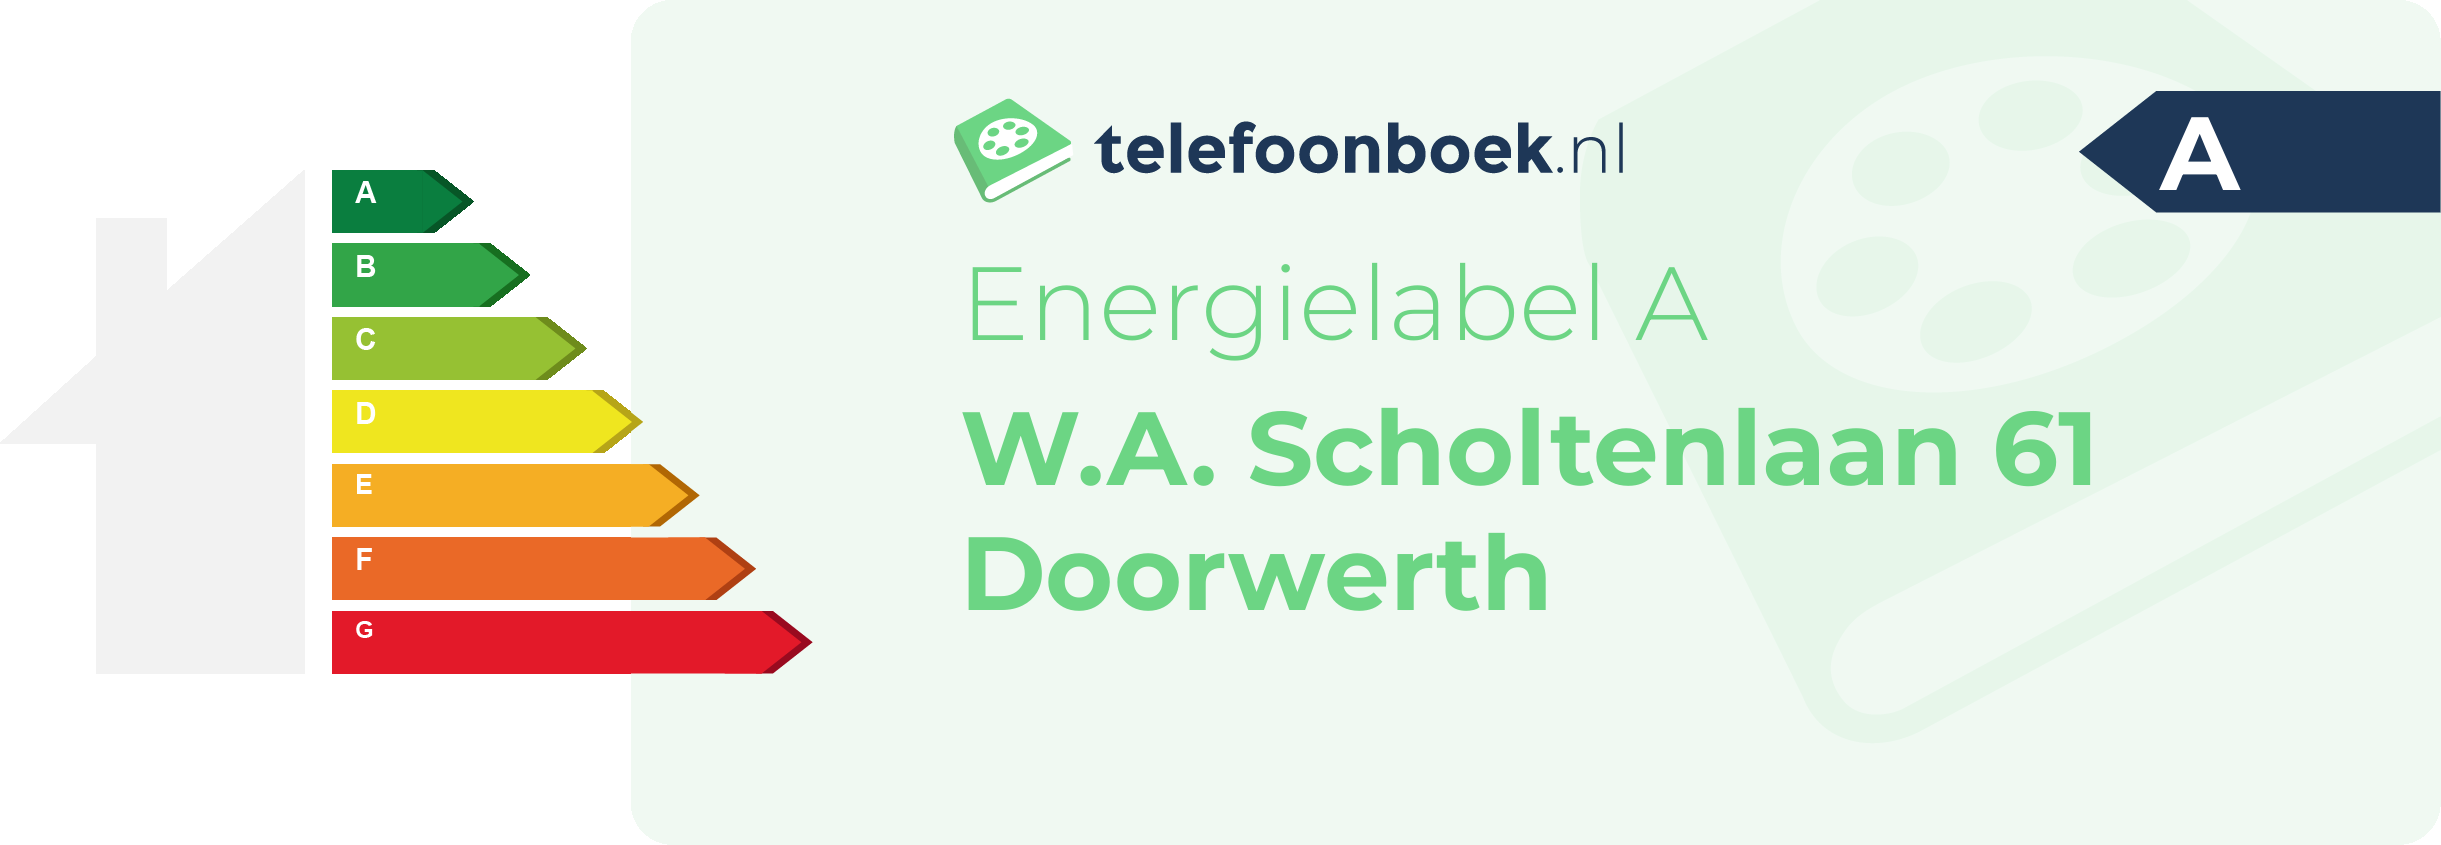 Energielabel W.A. Scholtenlaan 61 Doorwerth